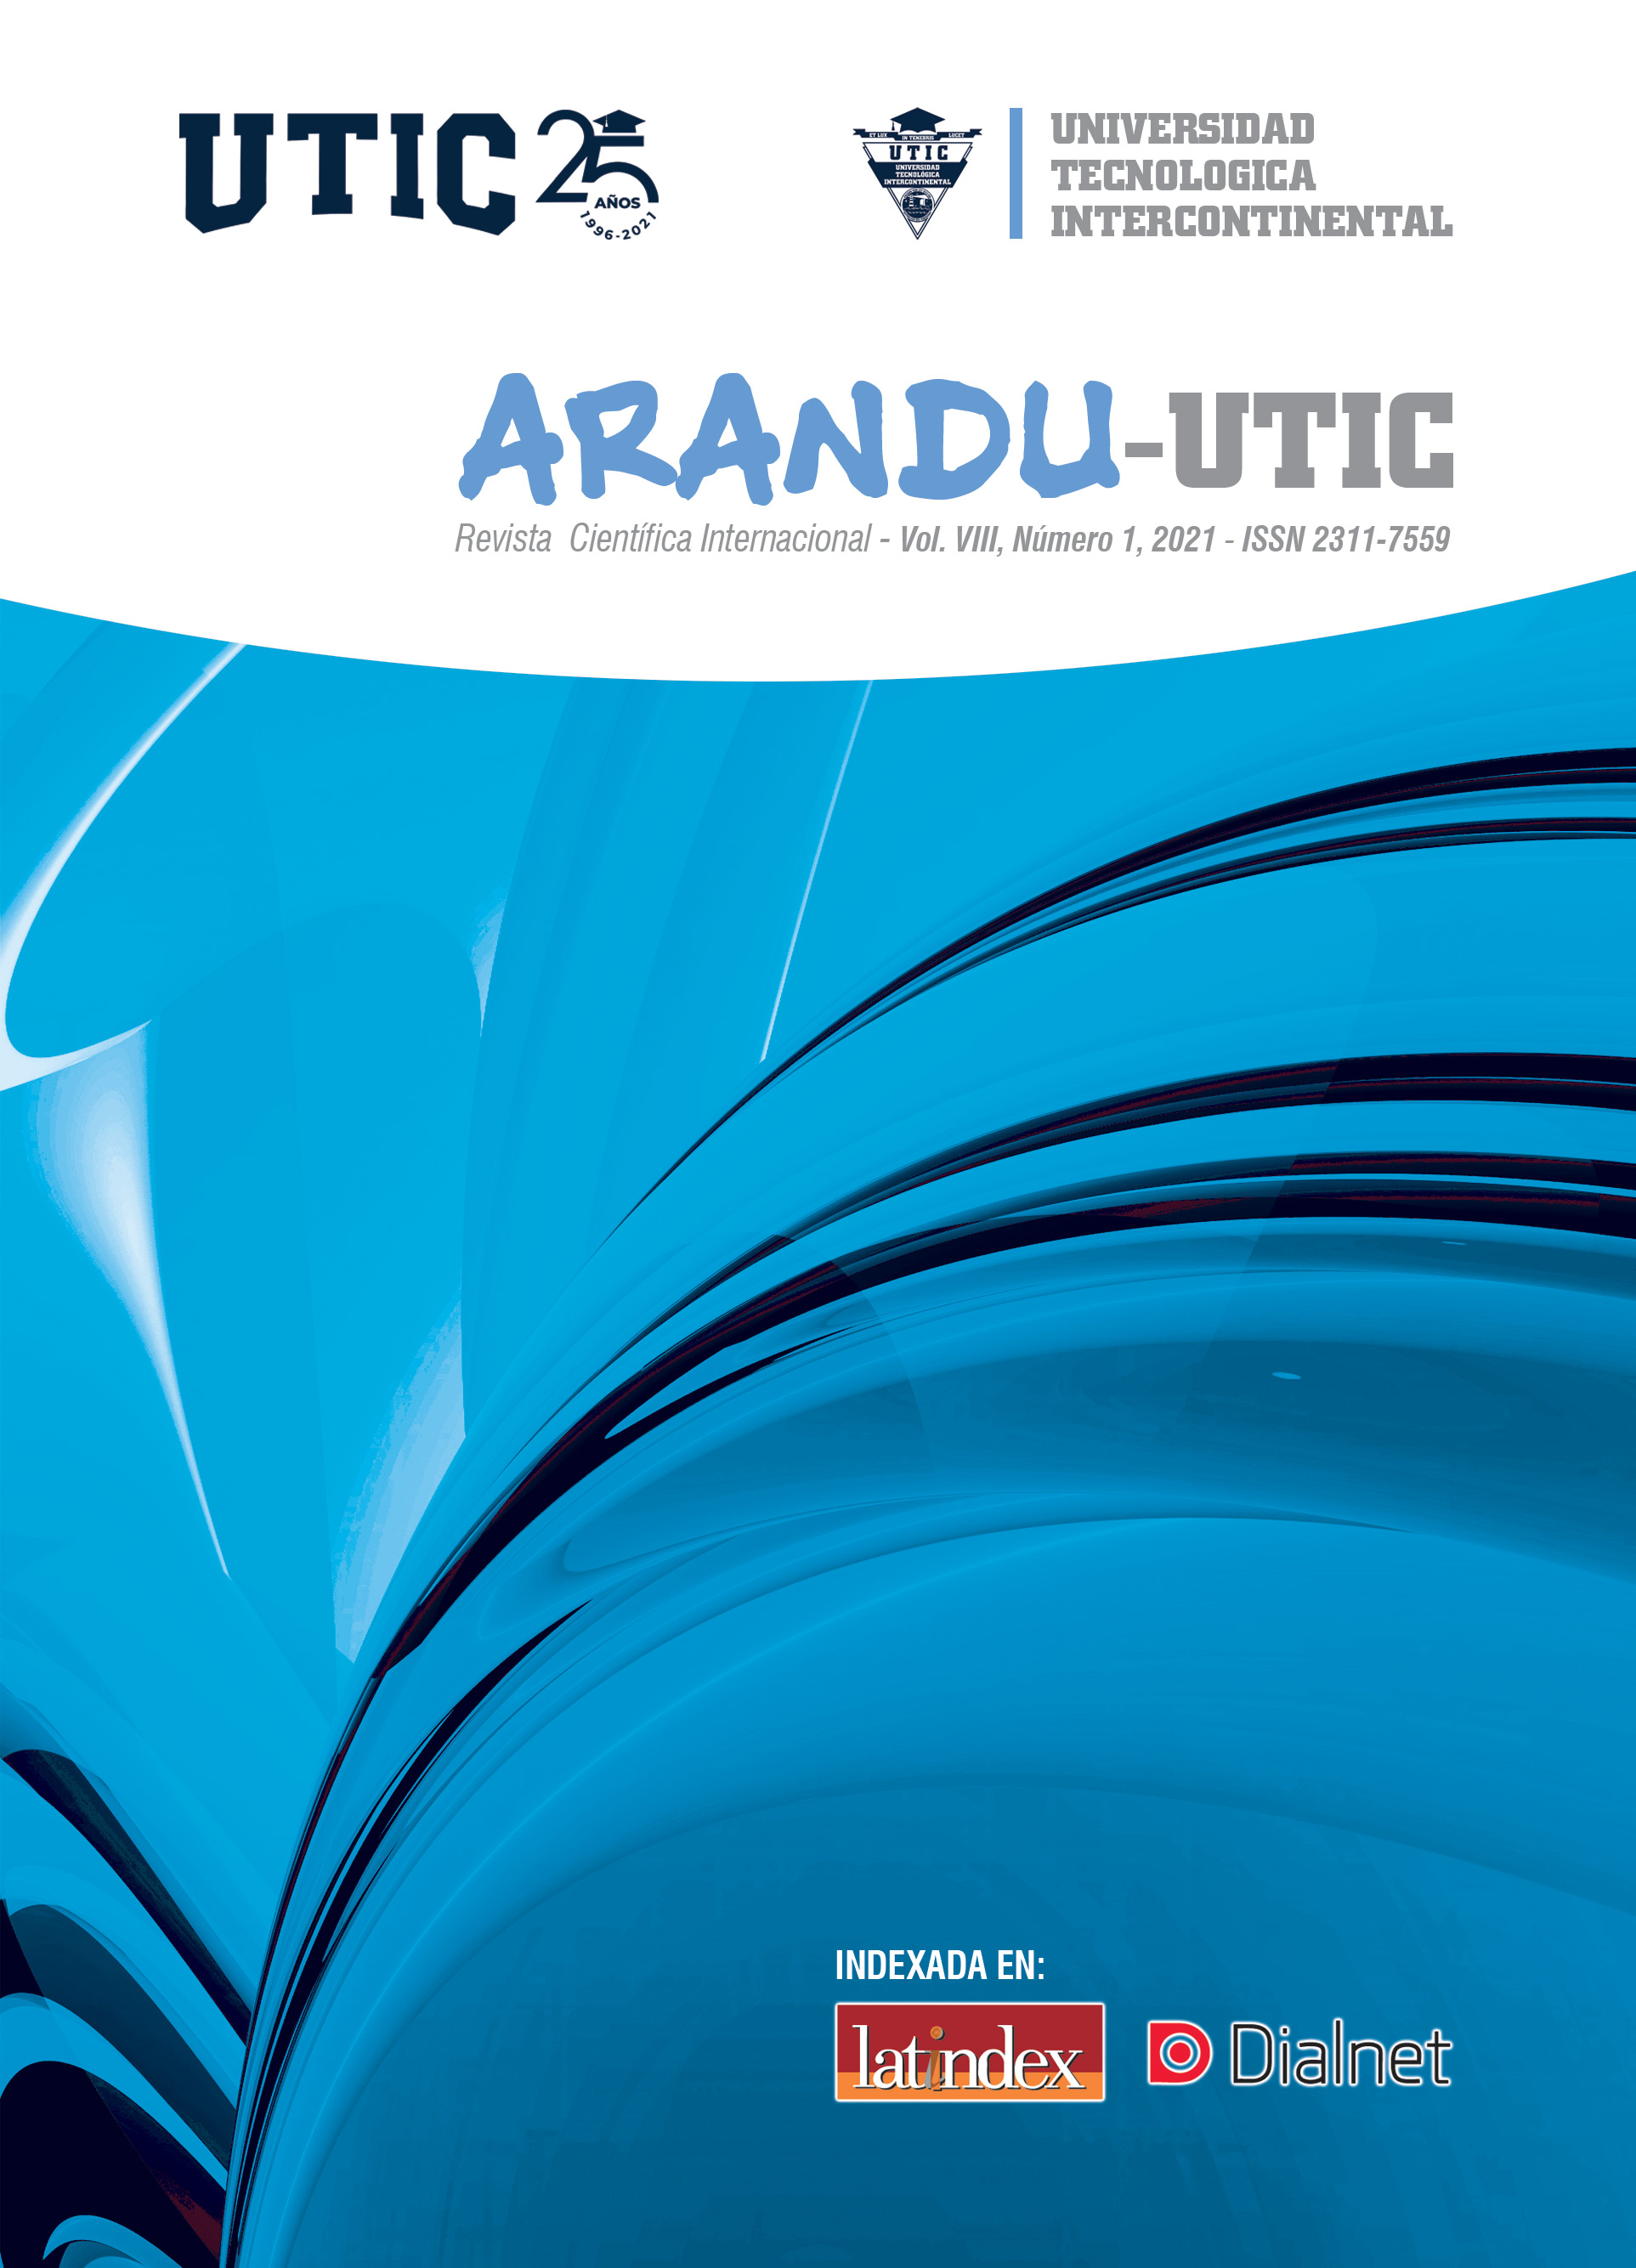 Revista Arandu UTIC